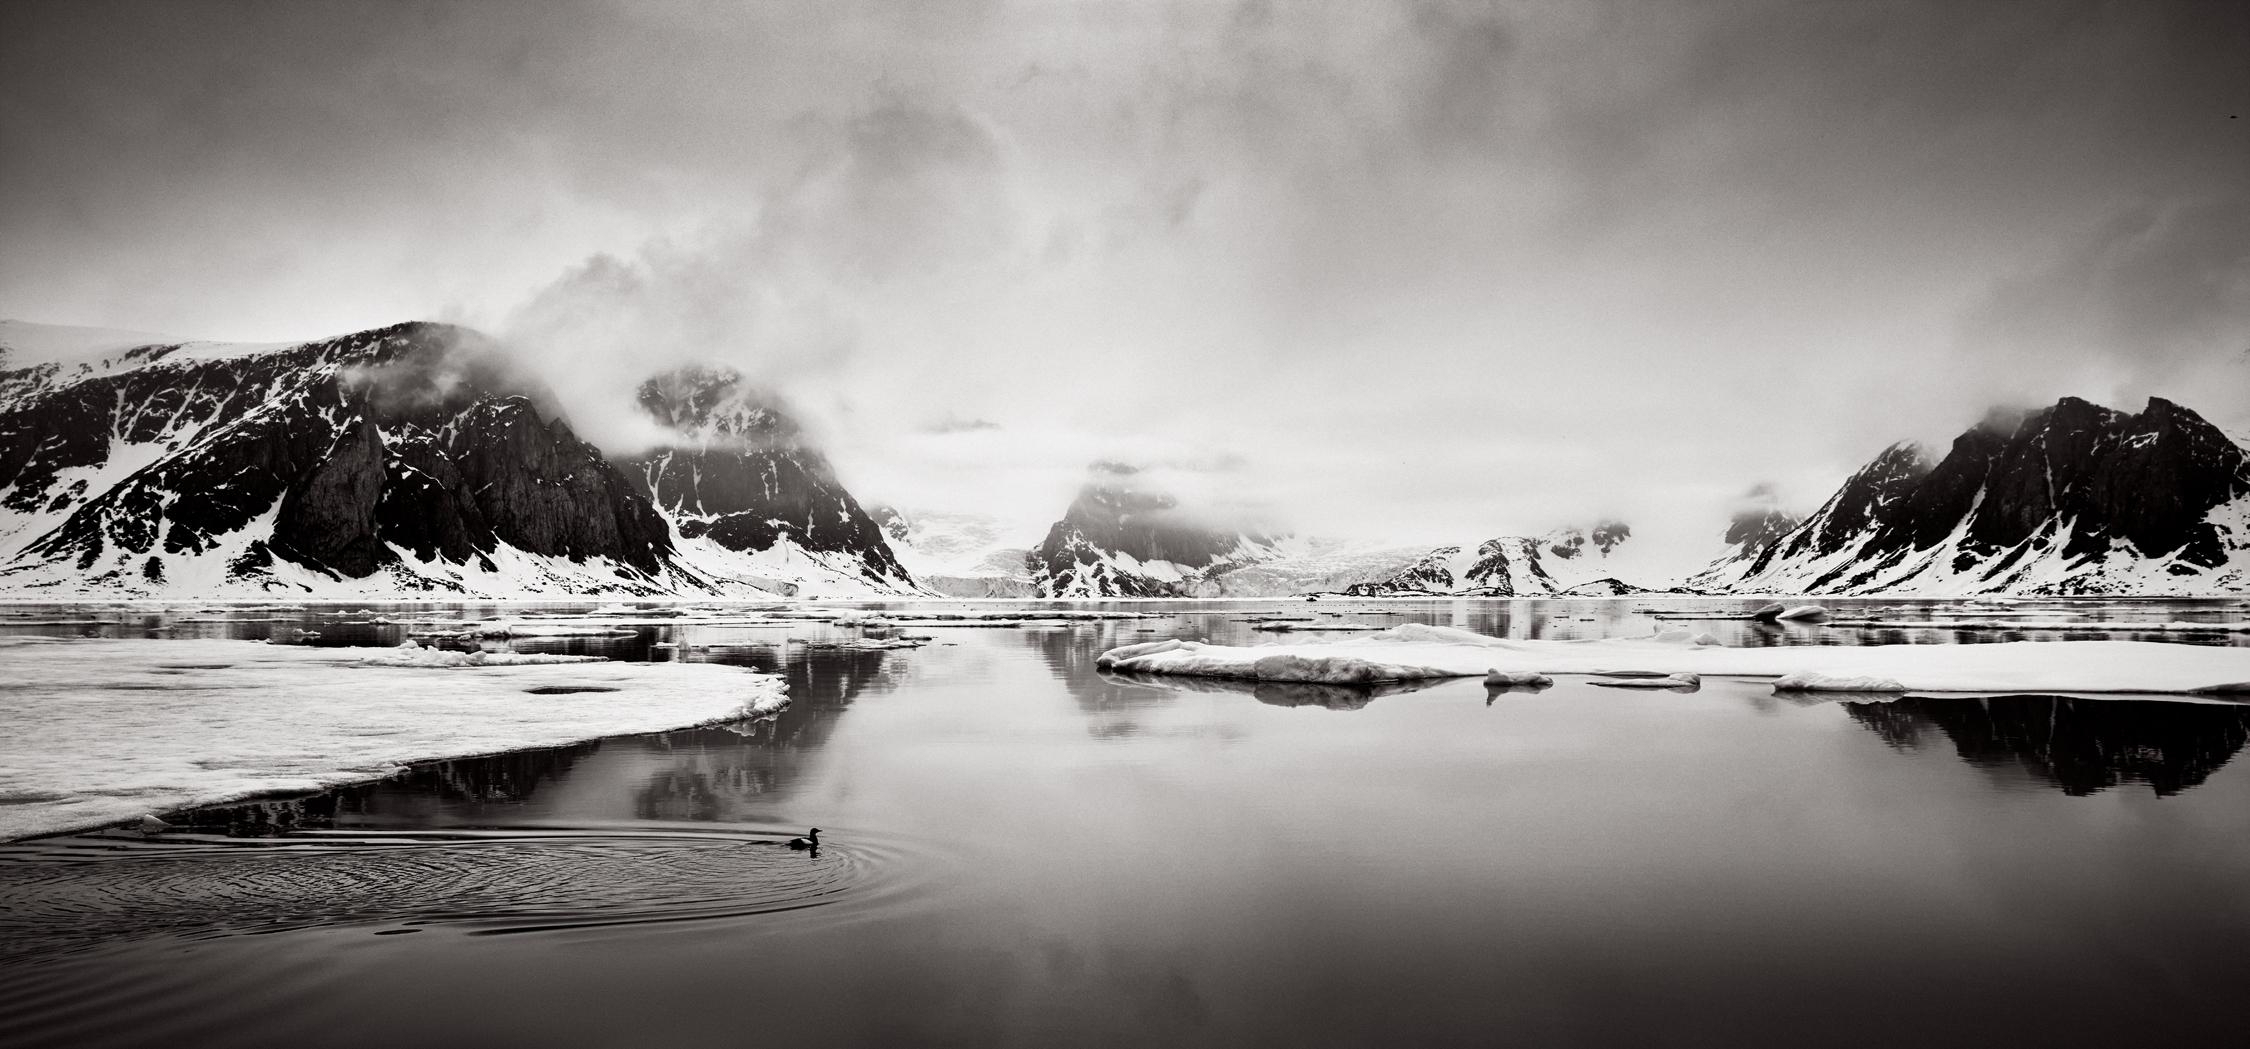 Drew Doggett Black and White Photograph – Arctic Landscape with Bird Swimming, Schwarz-Weiß-Fotografie